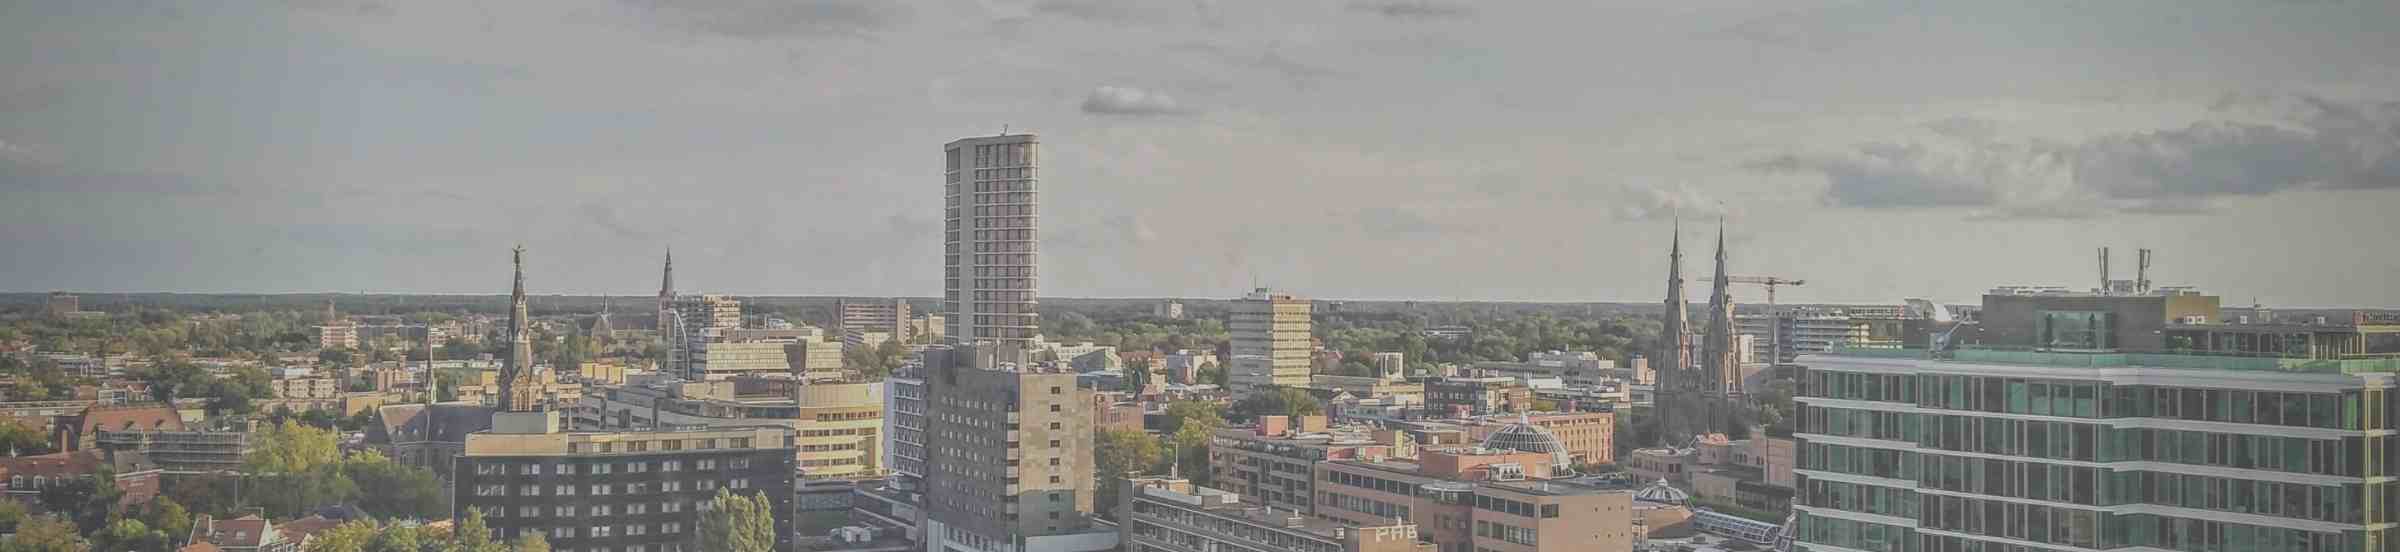 Uitzicht Eindhoven